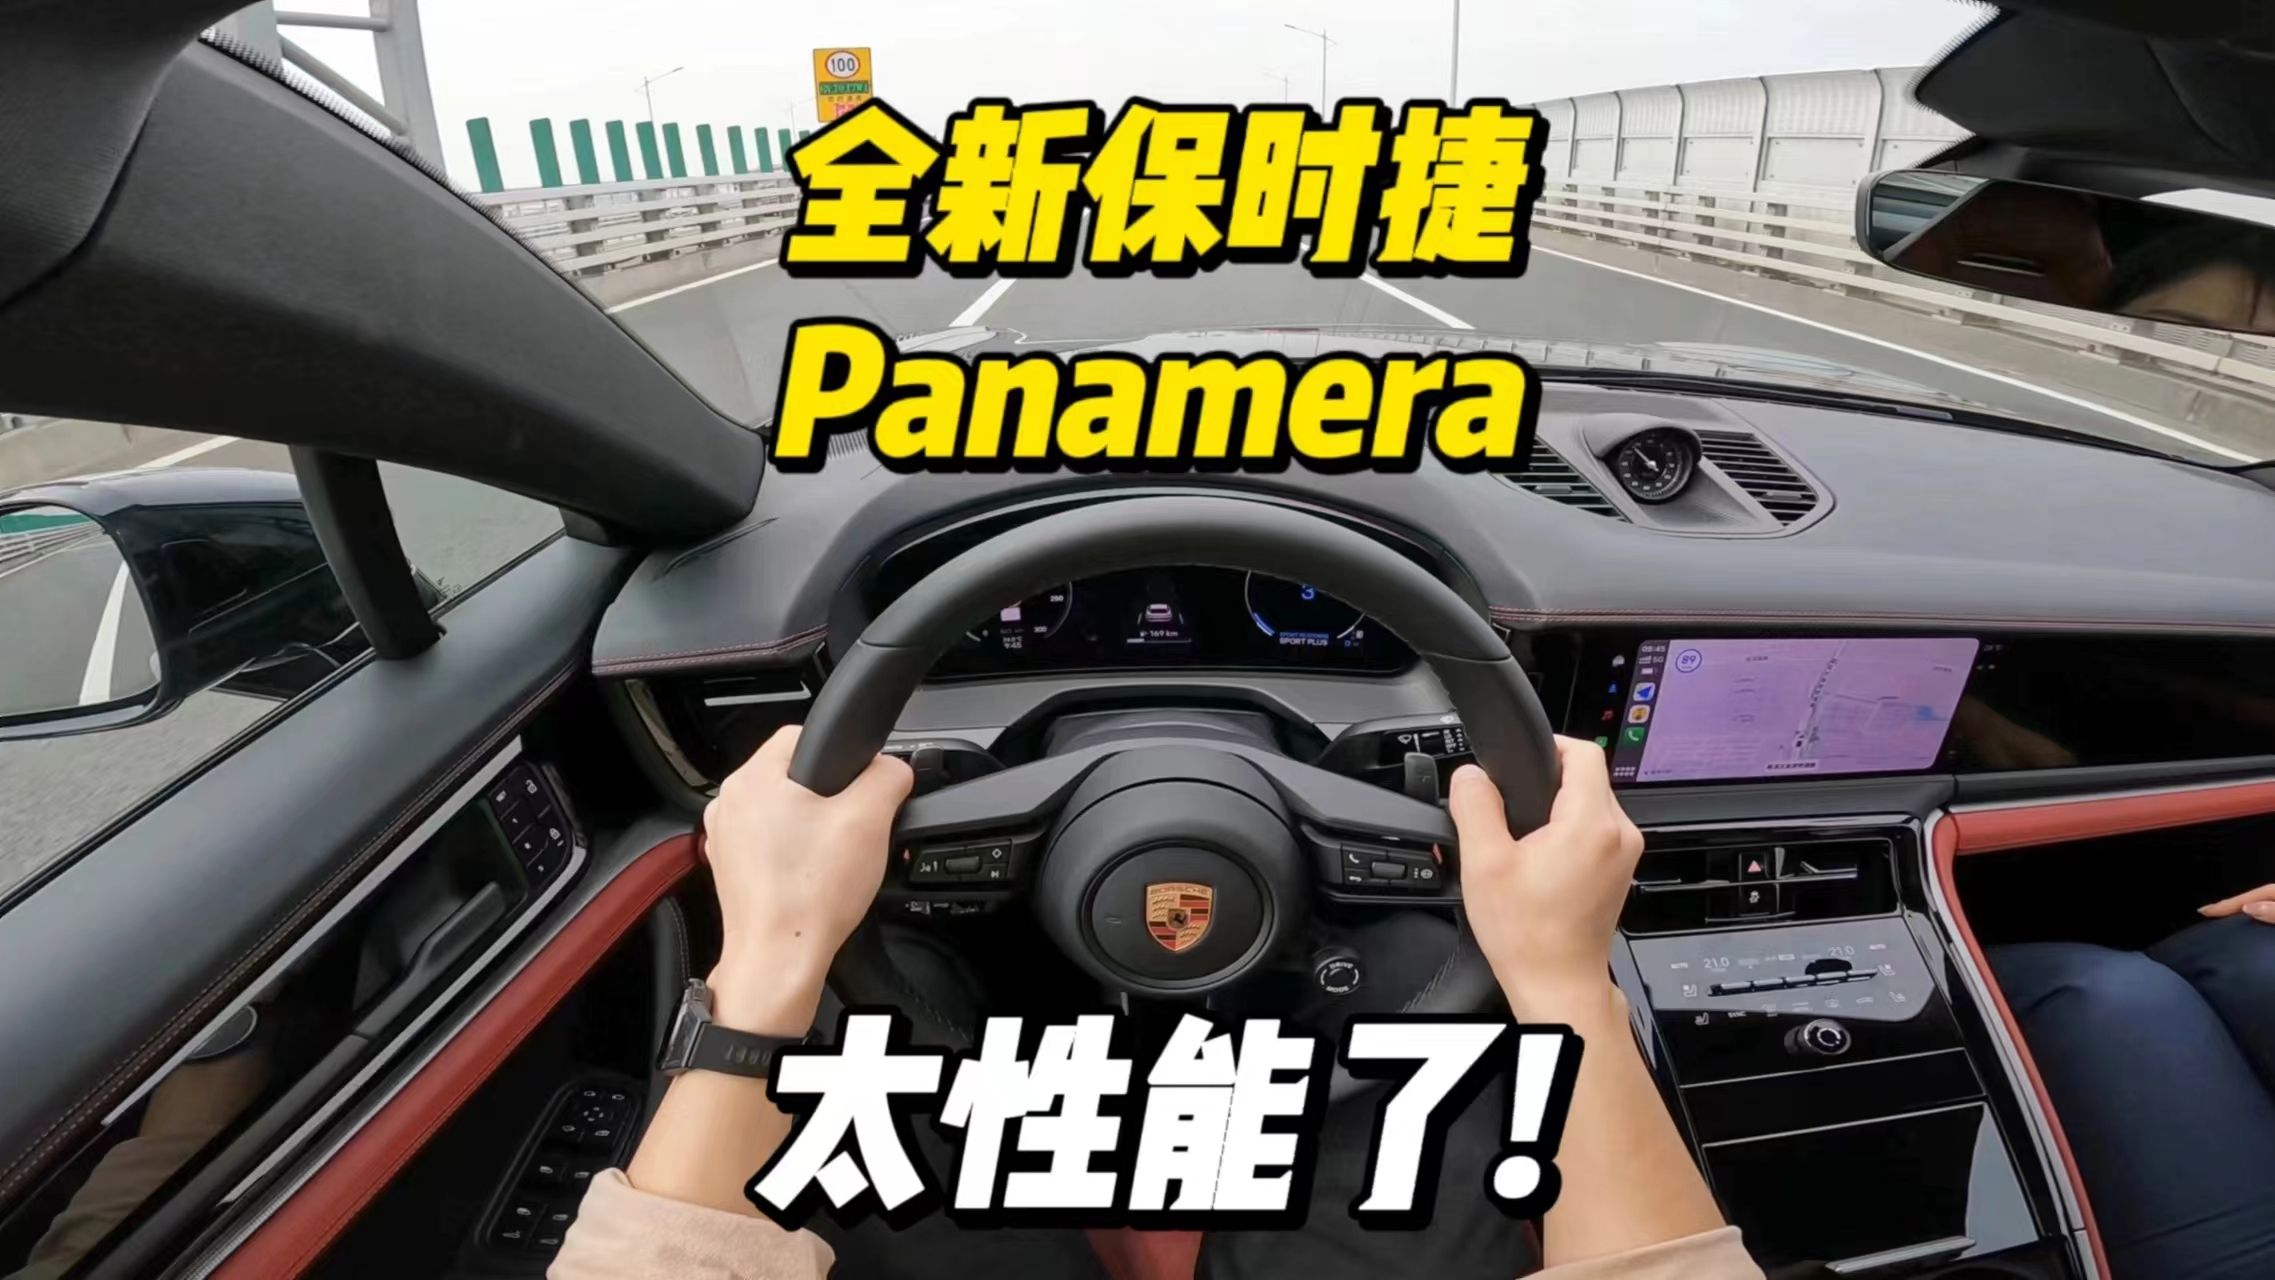 「第一视角」全新保时捷Panamera试驾体验，运动舒适极致均衡，年轻人的第一台车选它就够啦！